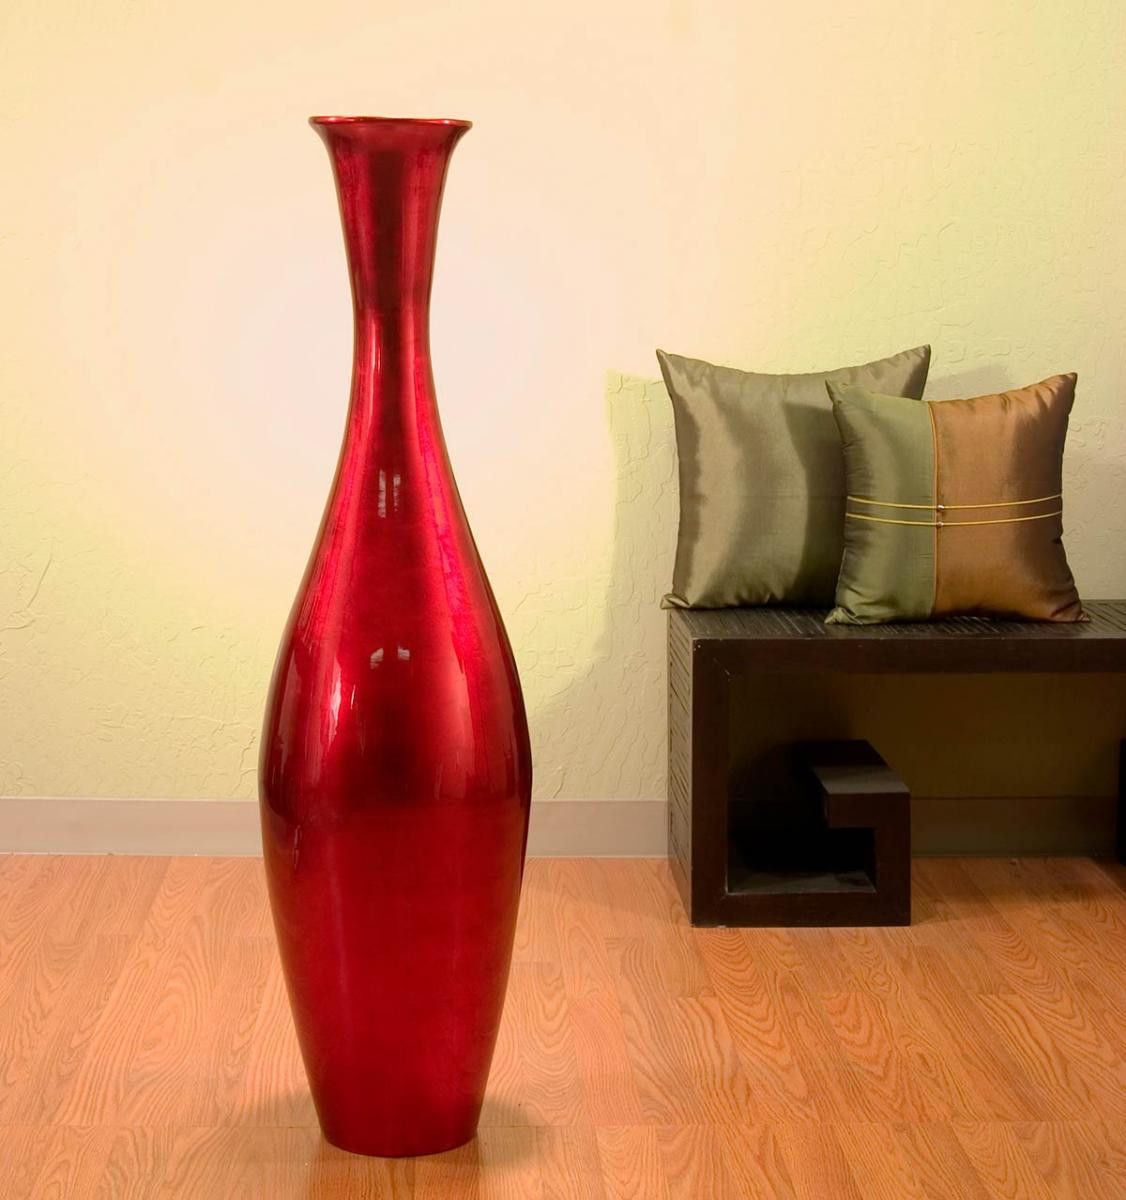 26 Wonderful Spun Bamboo Vase 2022 free download spun bamboo vase of bamboo decor regarding 44 egret bamboo vase ruby